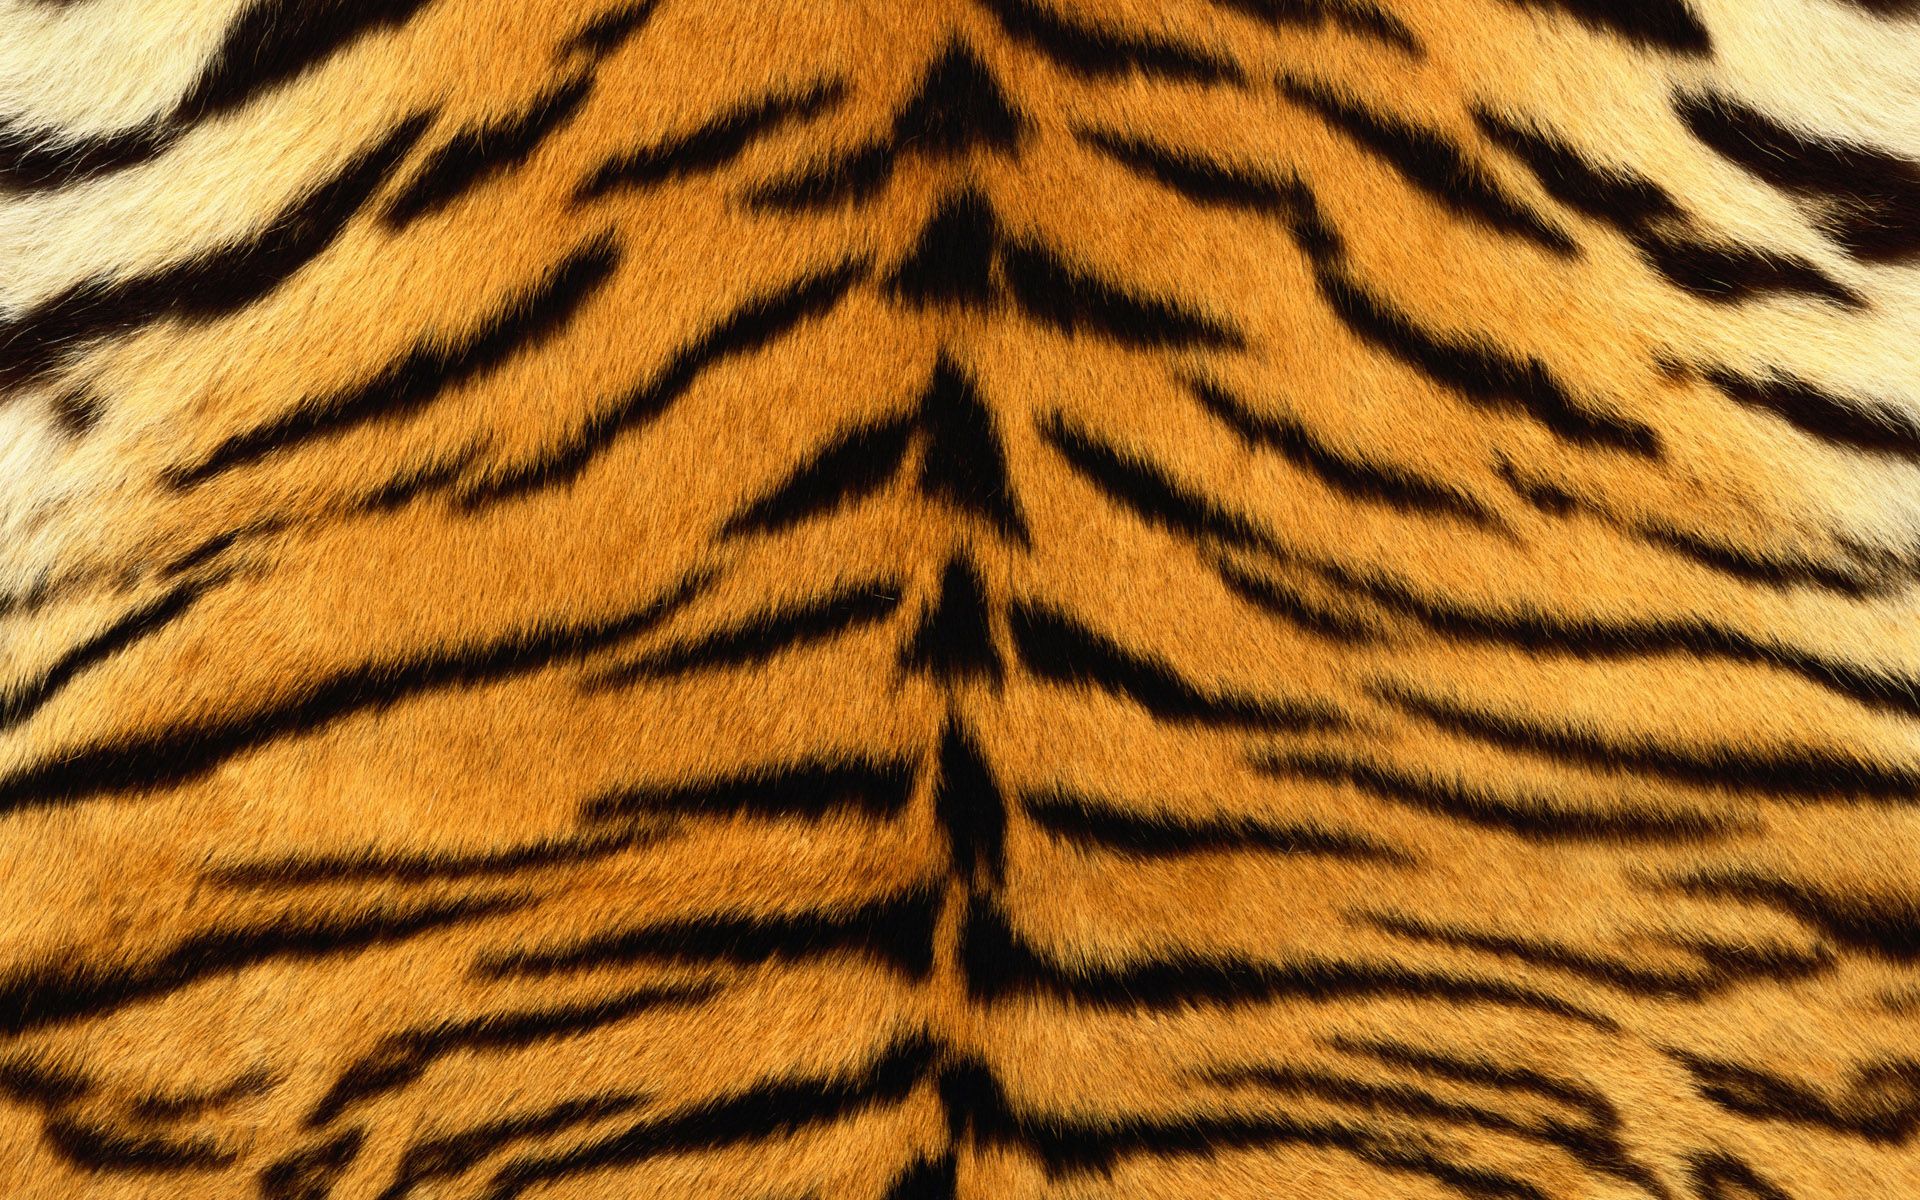 Tiger print wallpaper